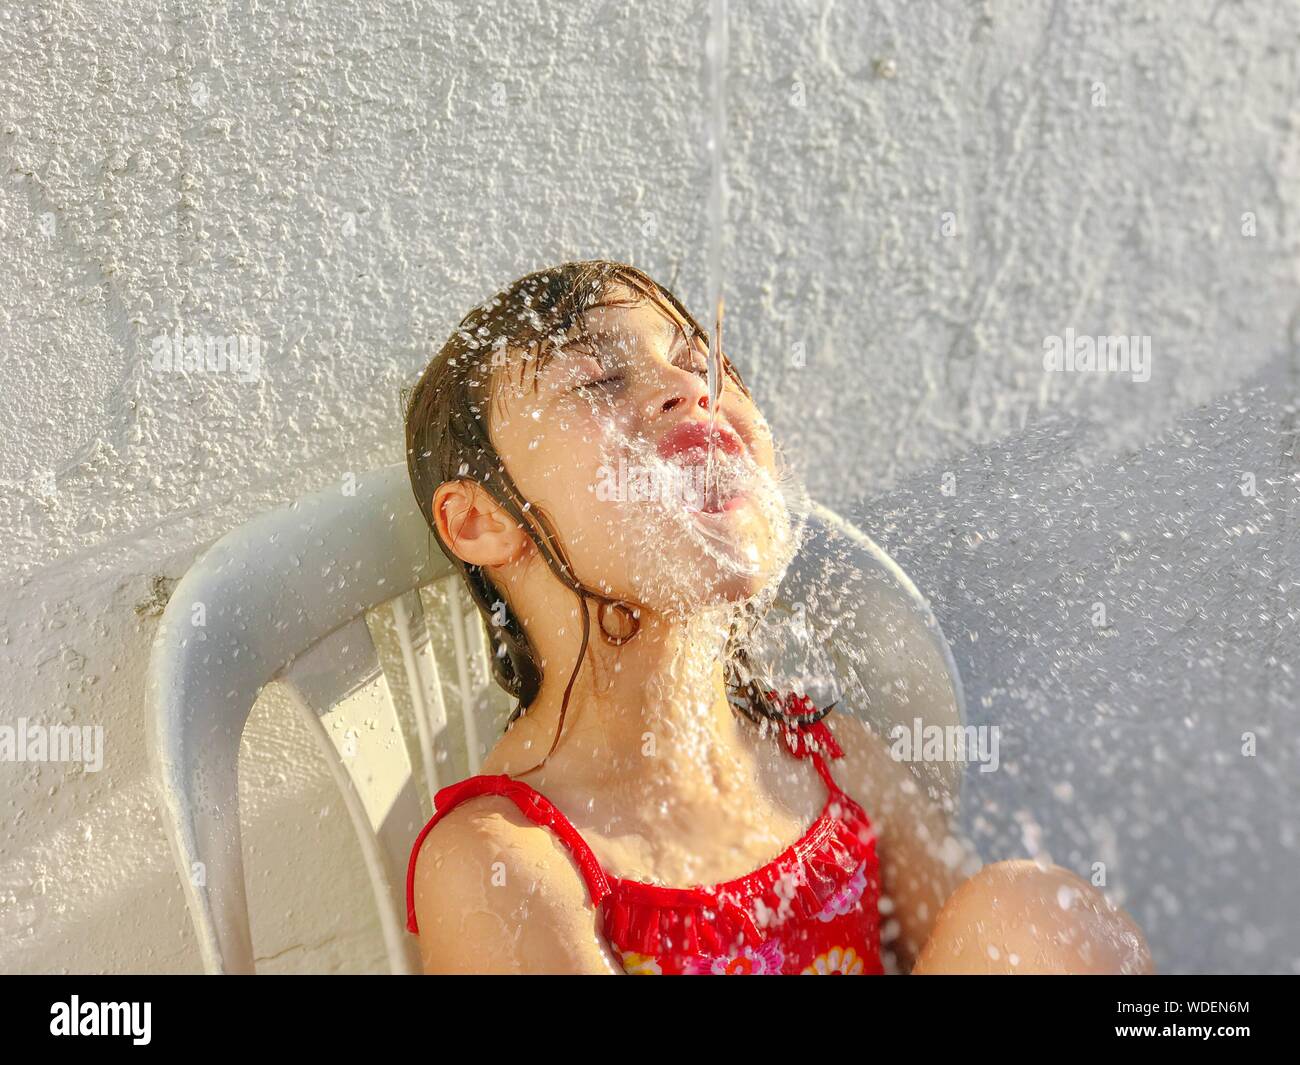 L'acqua spruzzata sulla bocca della ragazza contro il muro bianco Foto Stock